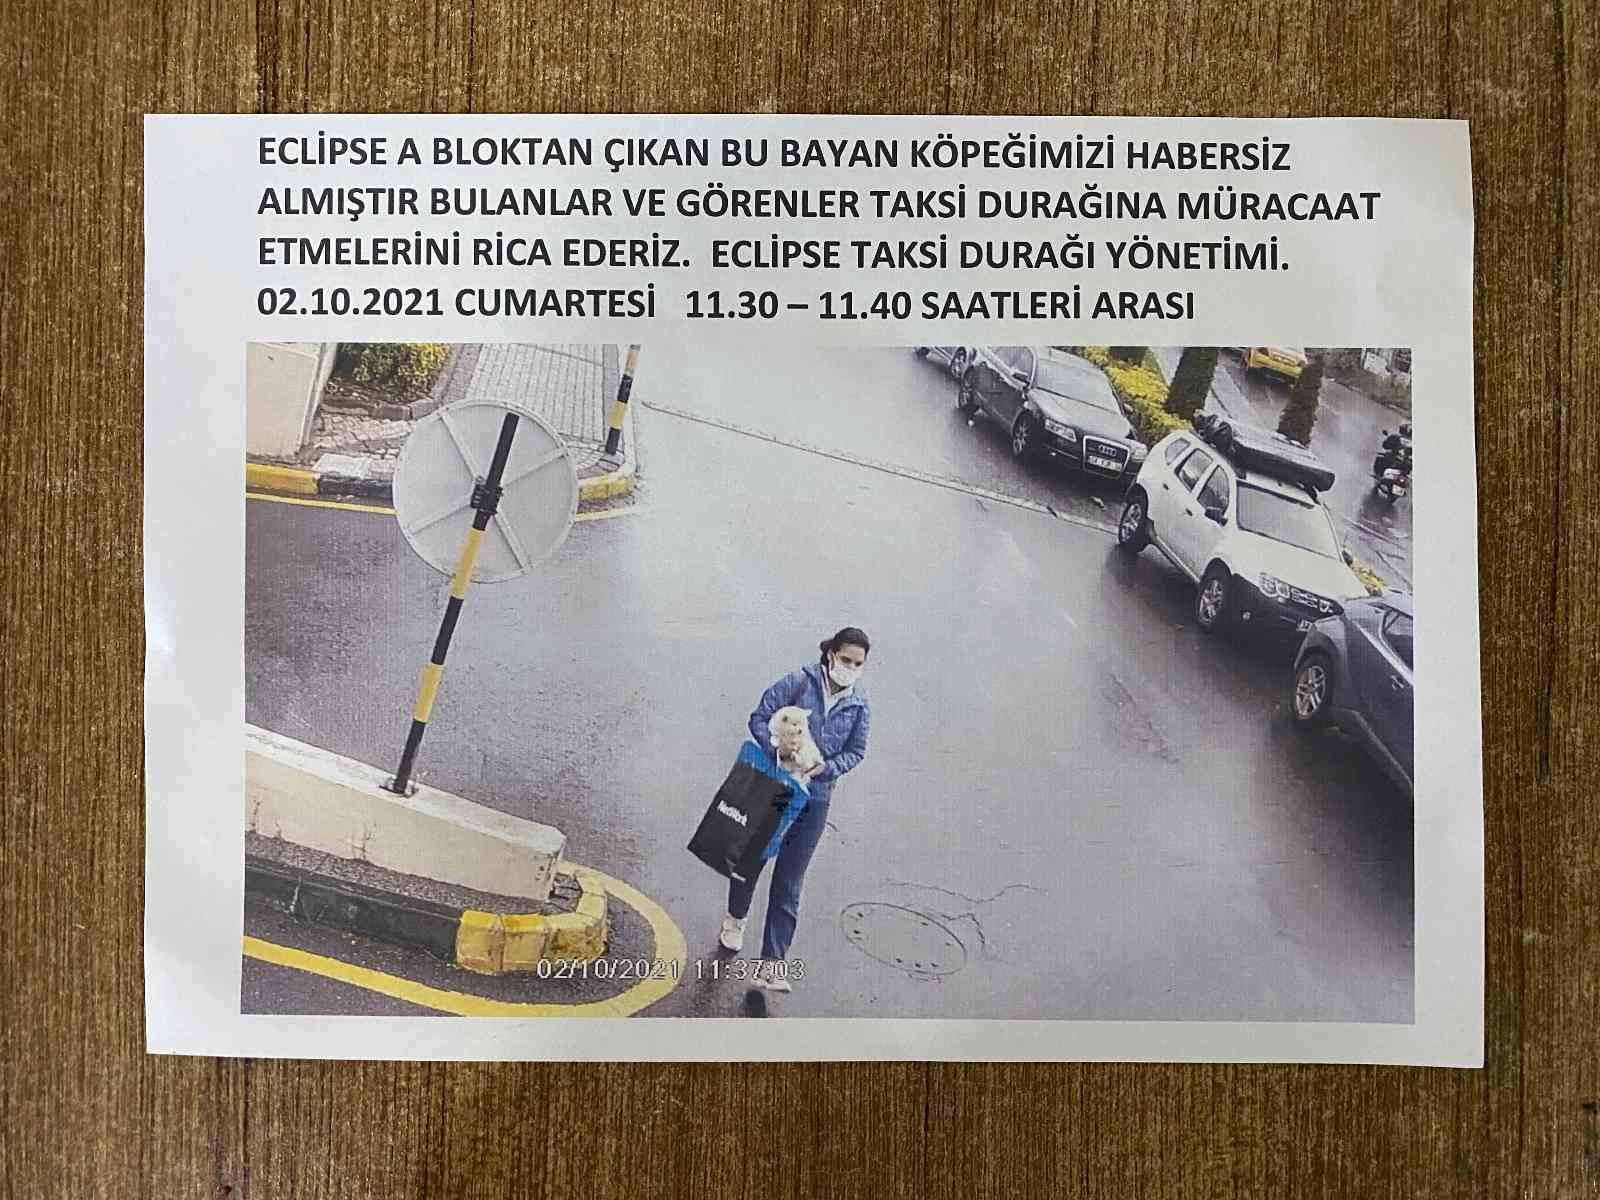 (ÖZEL) Sarıyer’de köpek hırsızlığı kamerada #istanbul